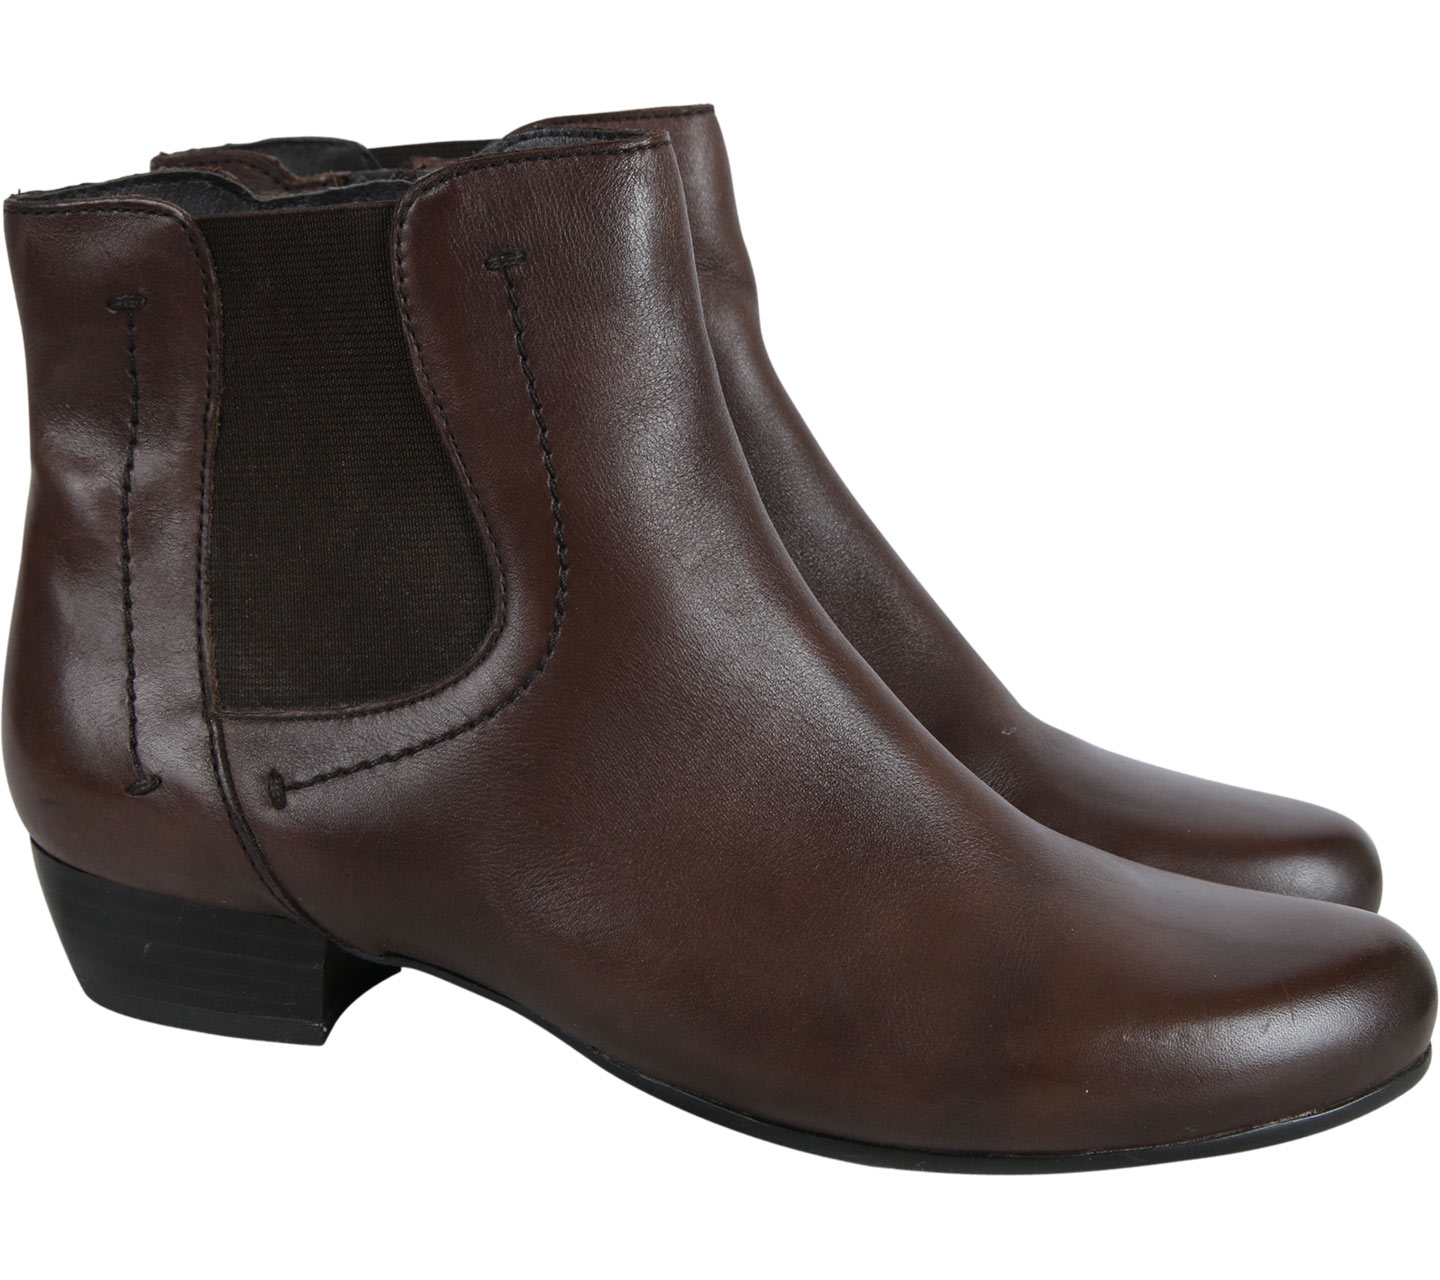 Wittner Brown Boots